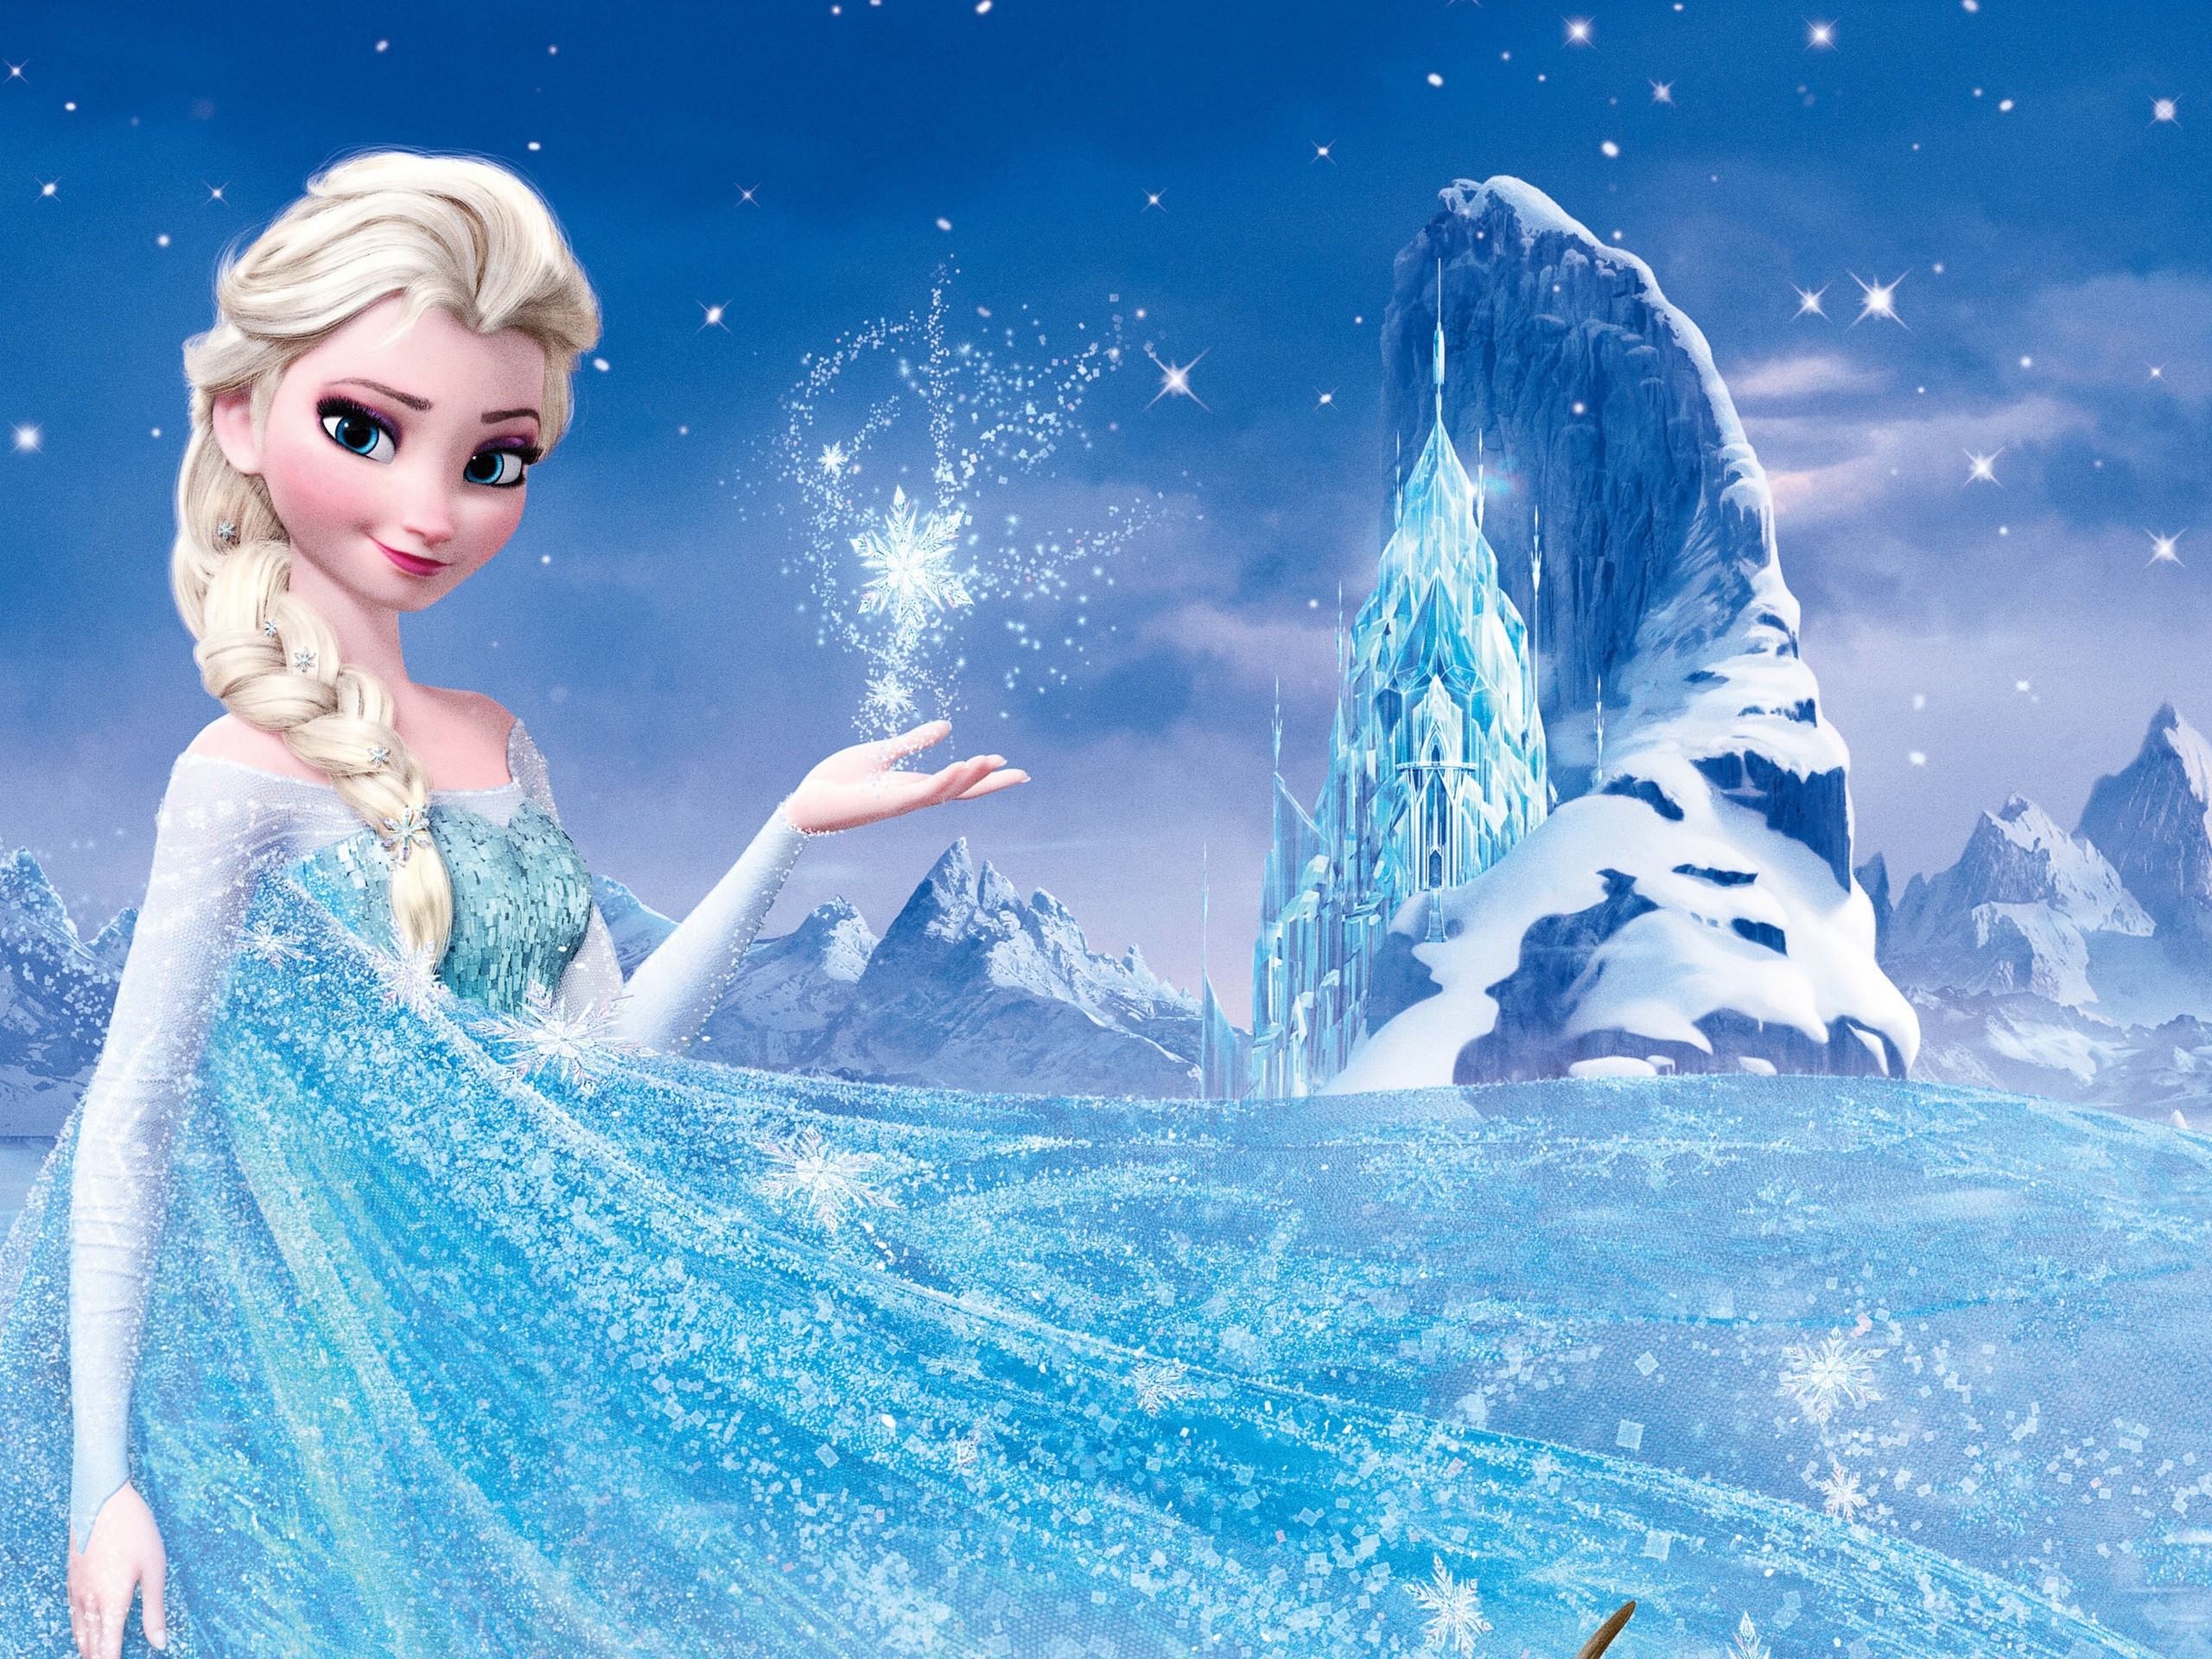 2560x1920 Frozen, Disney 2013 movie, Princess Elsa wallpaper thumb